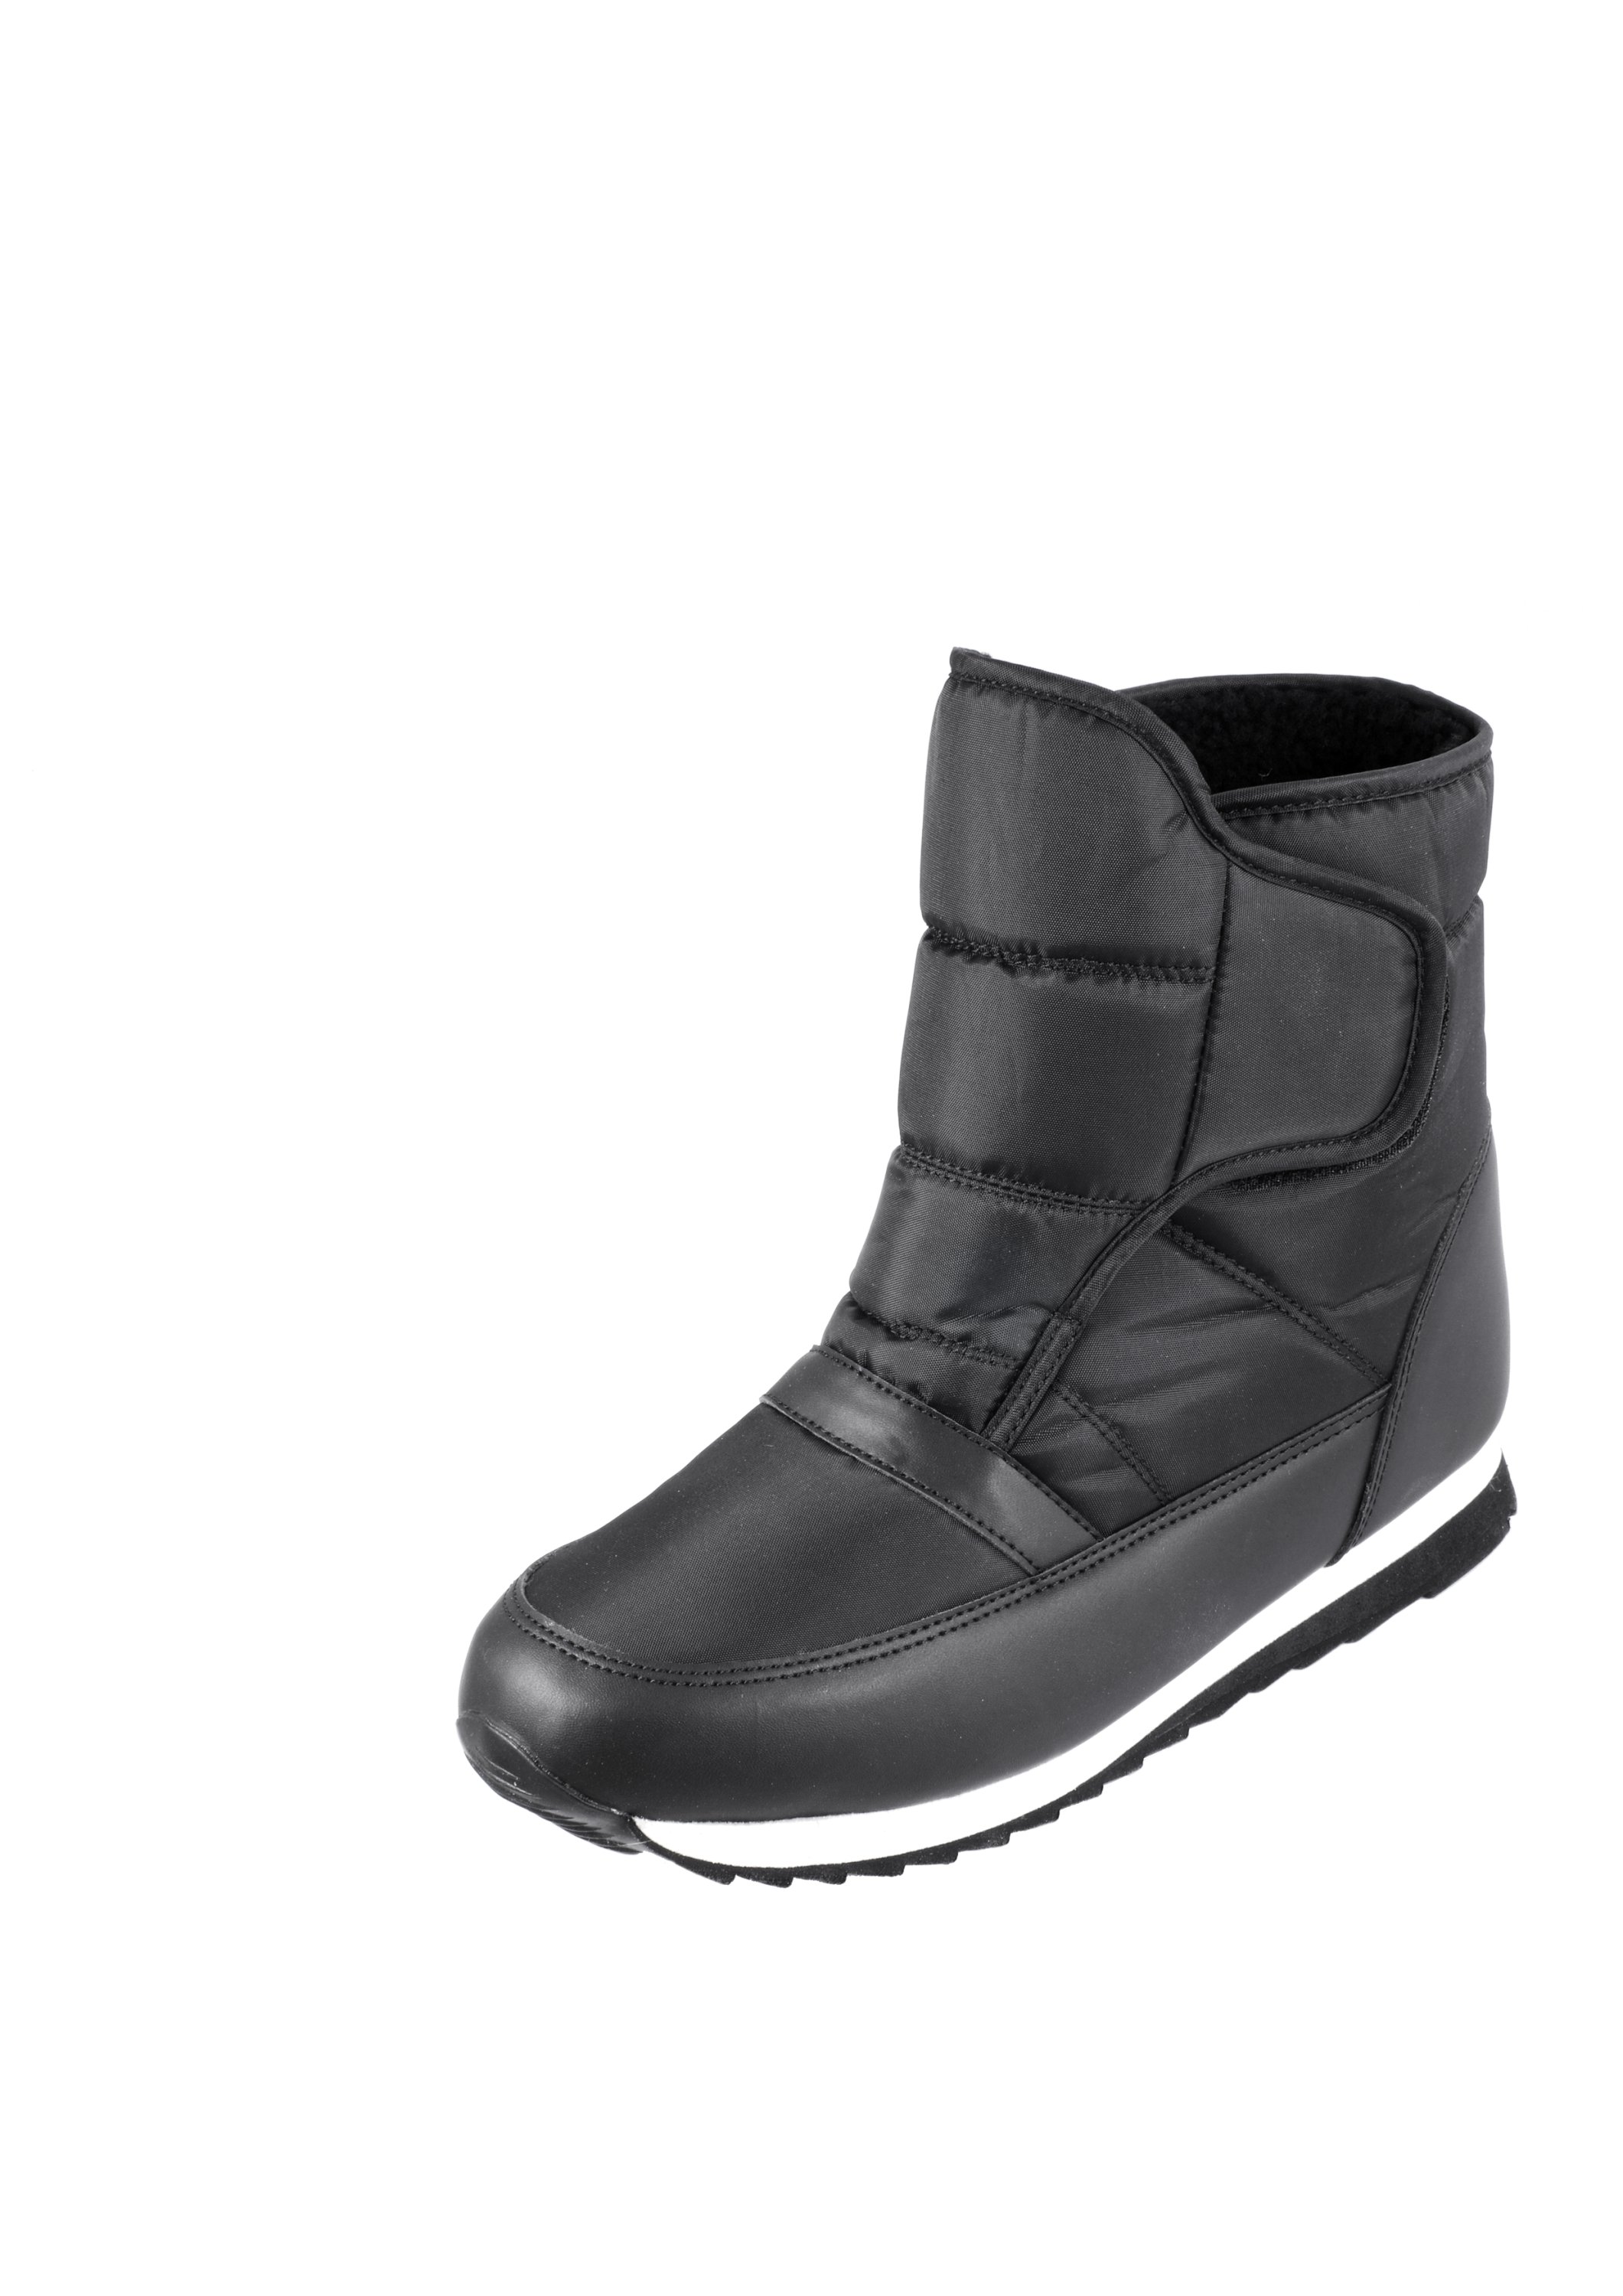 Schwarz 37 DAMEN Schuhe Waterproof Stiefel Rabatt 66 % Belle & beauty Stiefel 